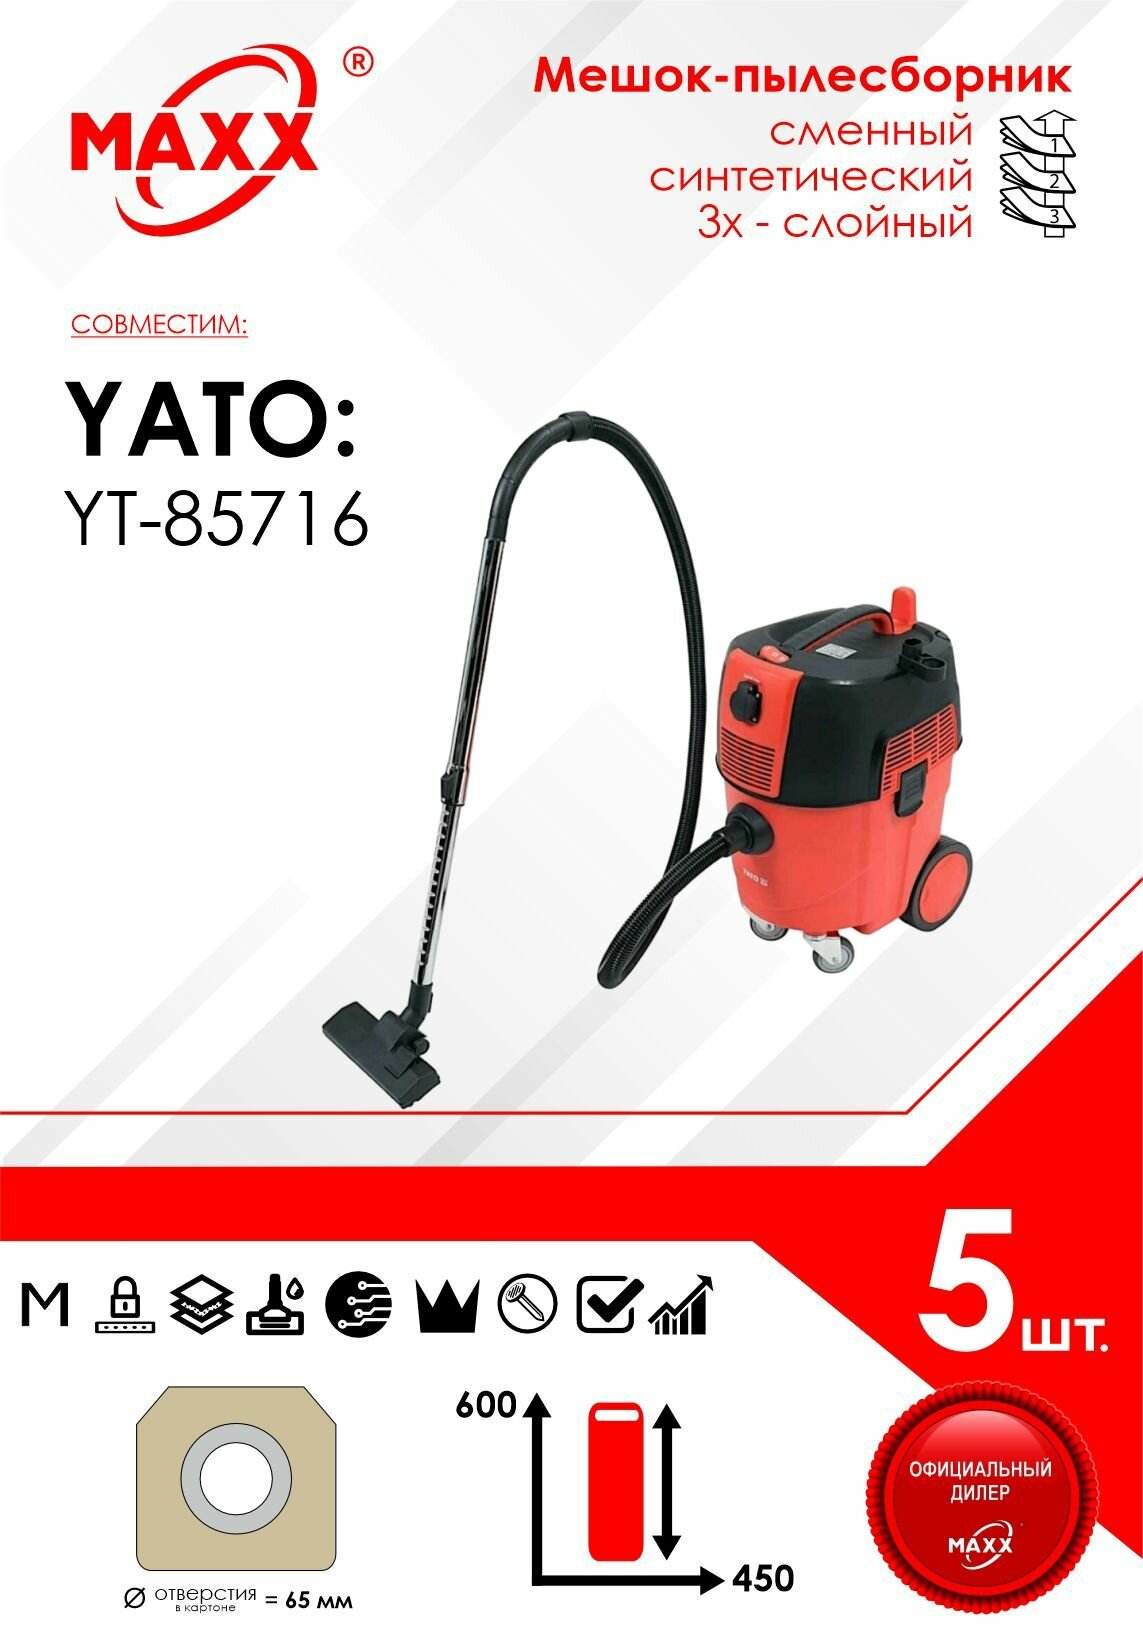 Мешок - пылесборник 5 шт. для пылесоса YATO YT-85716, 1600W, 30л